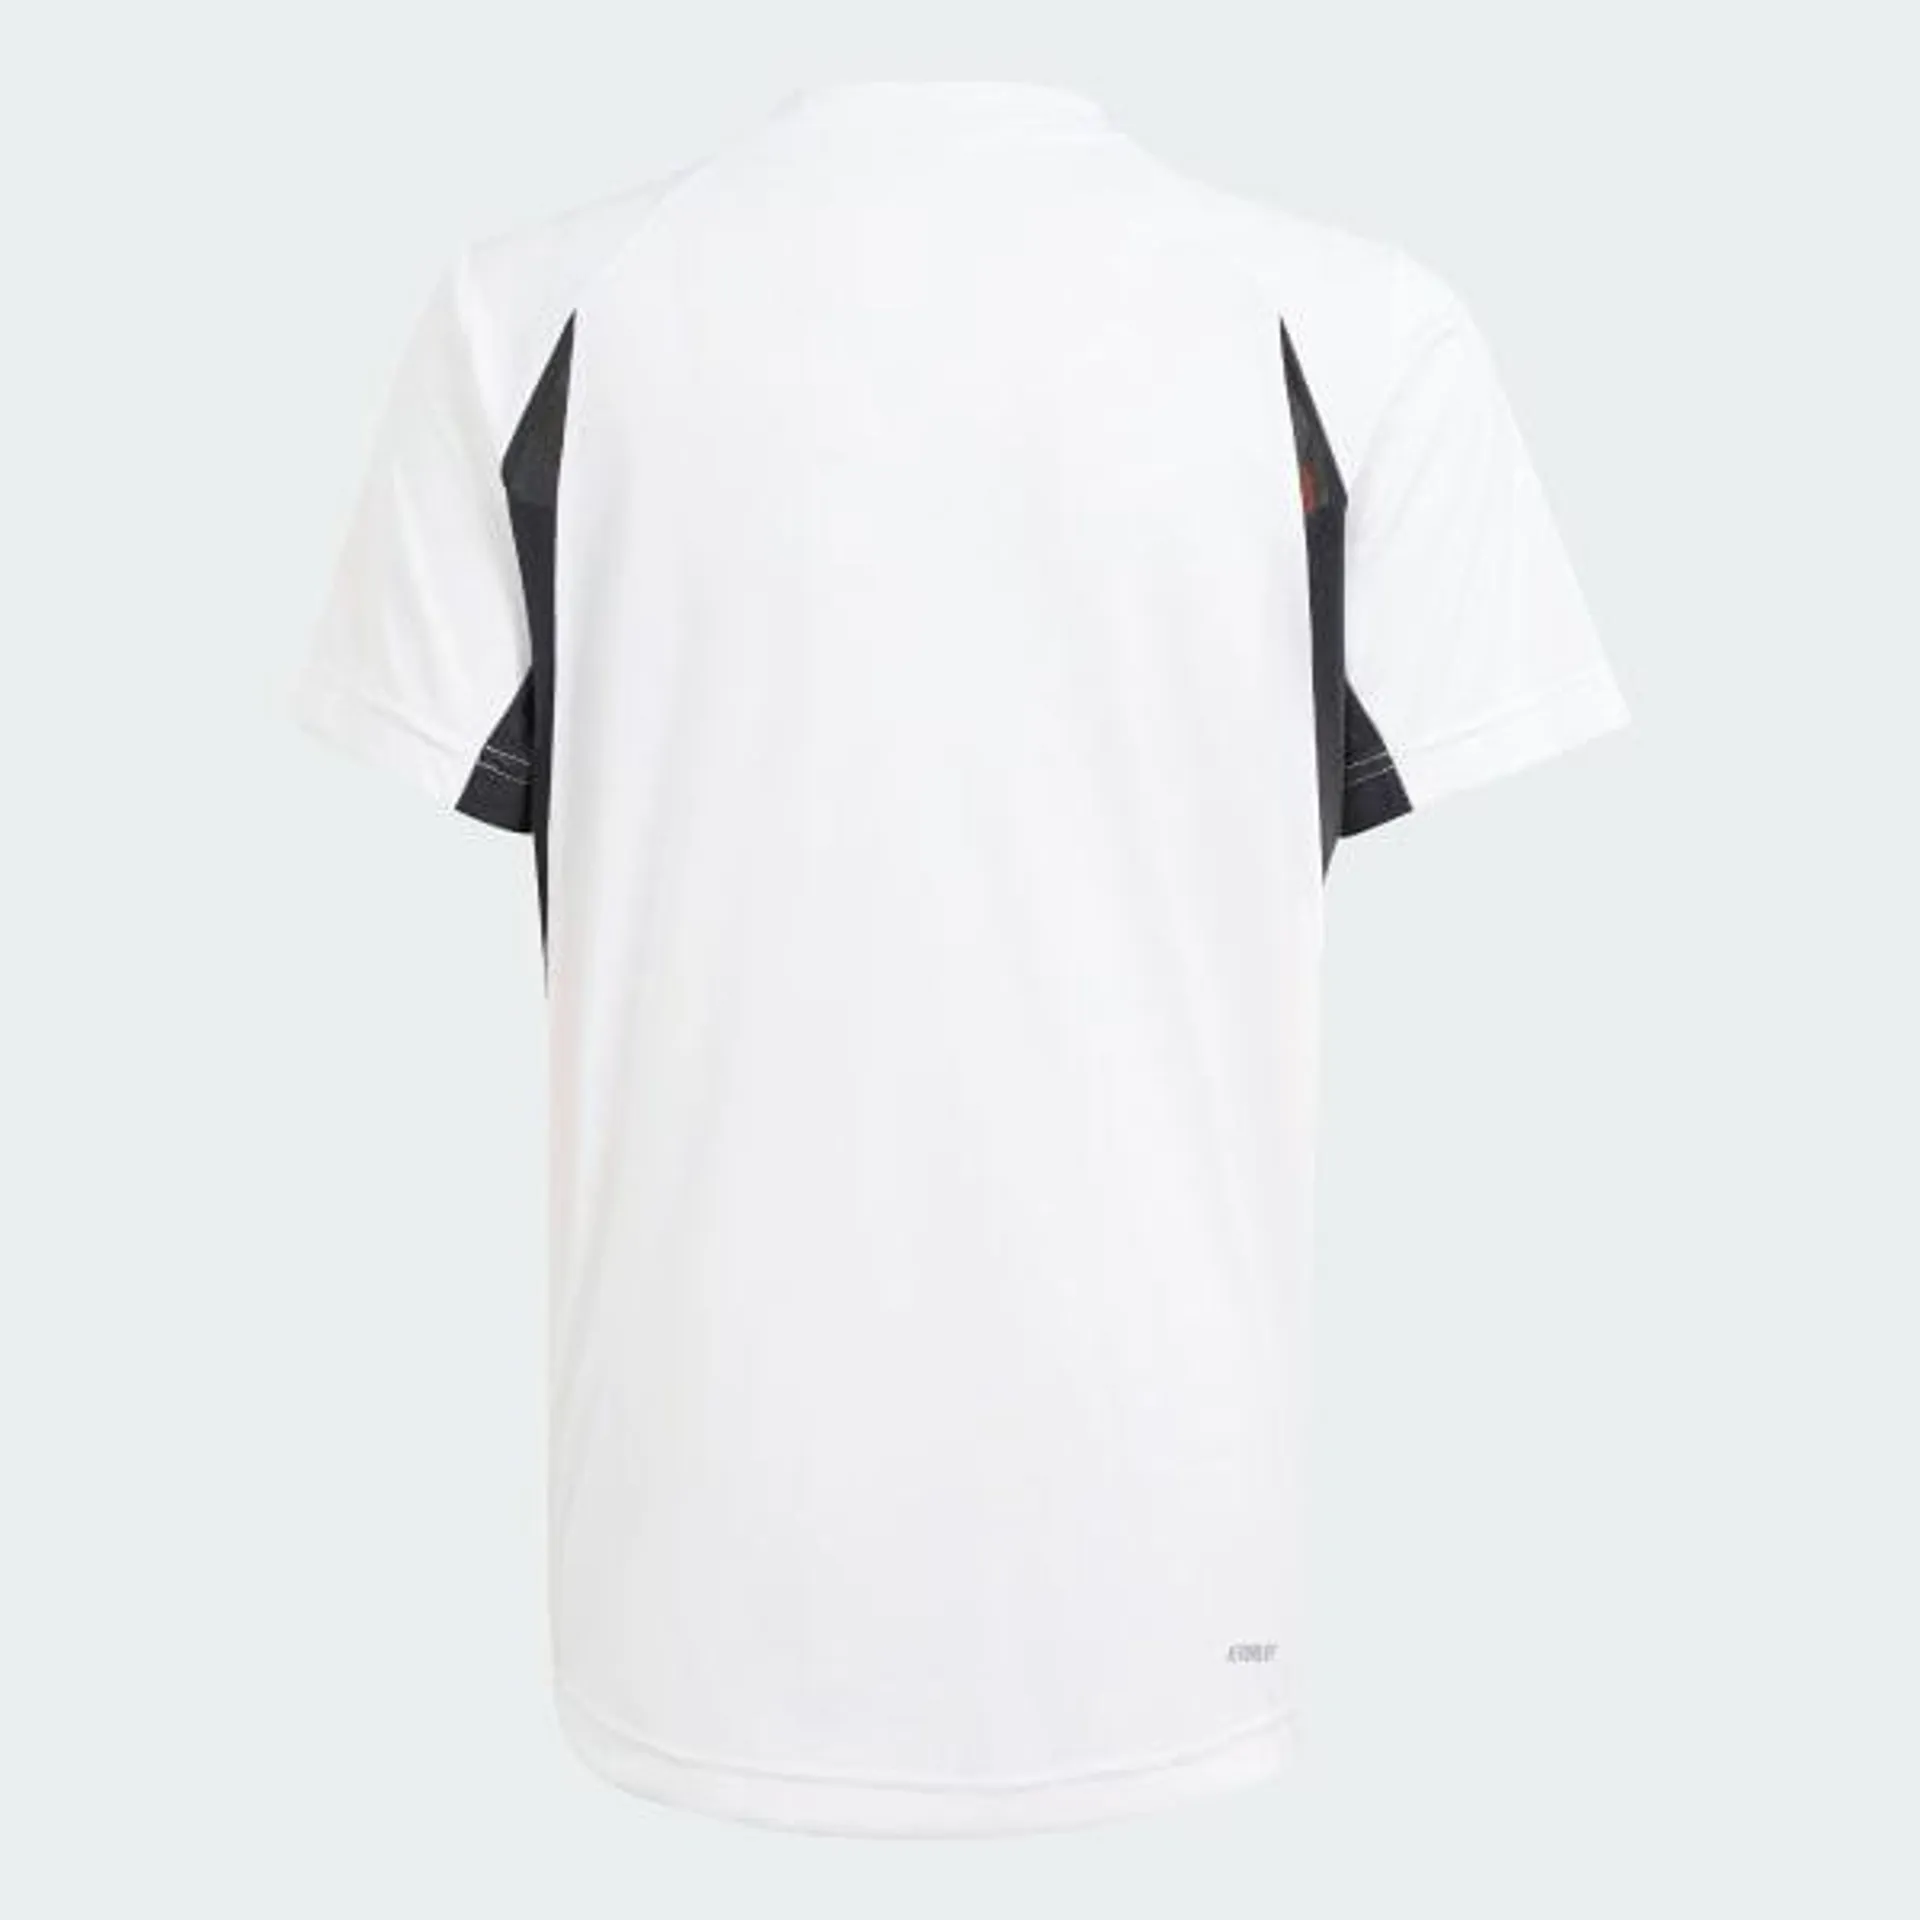 Tennis Pro Kids T-Shirt